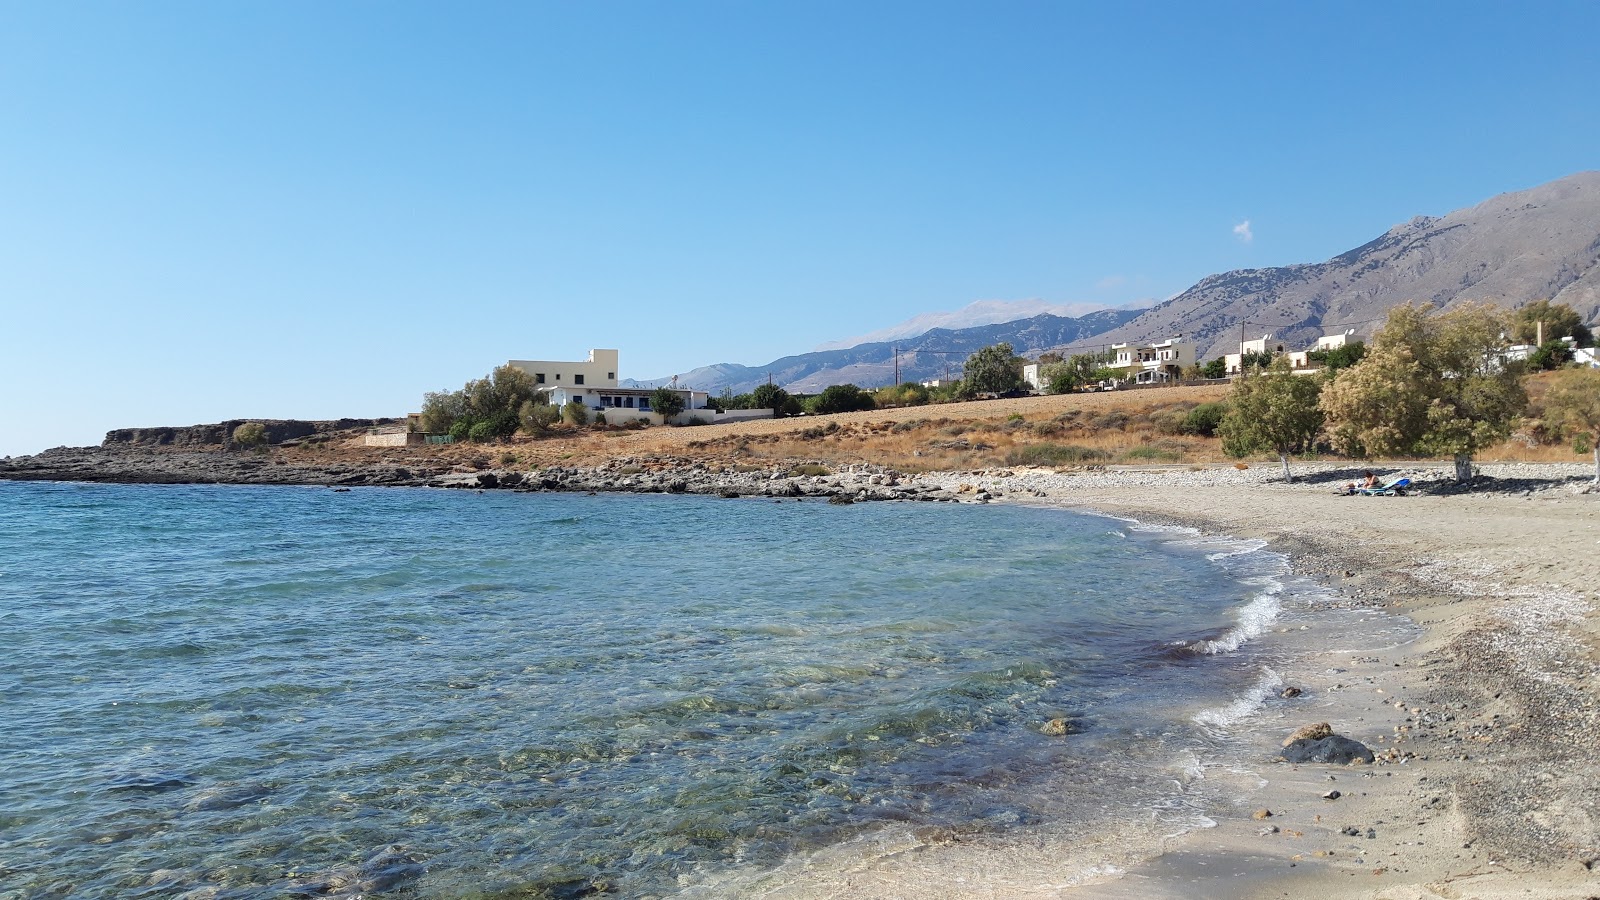 Vatalos beach'in fotoğrafı geniş plaj ile birlikte